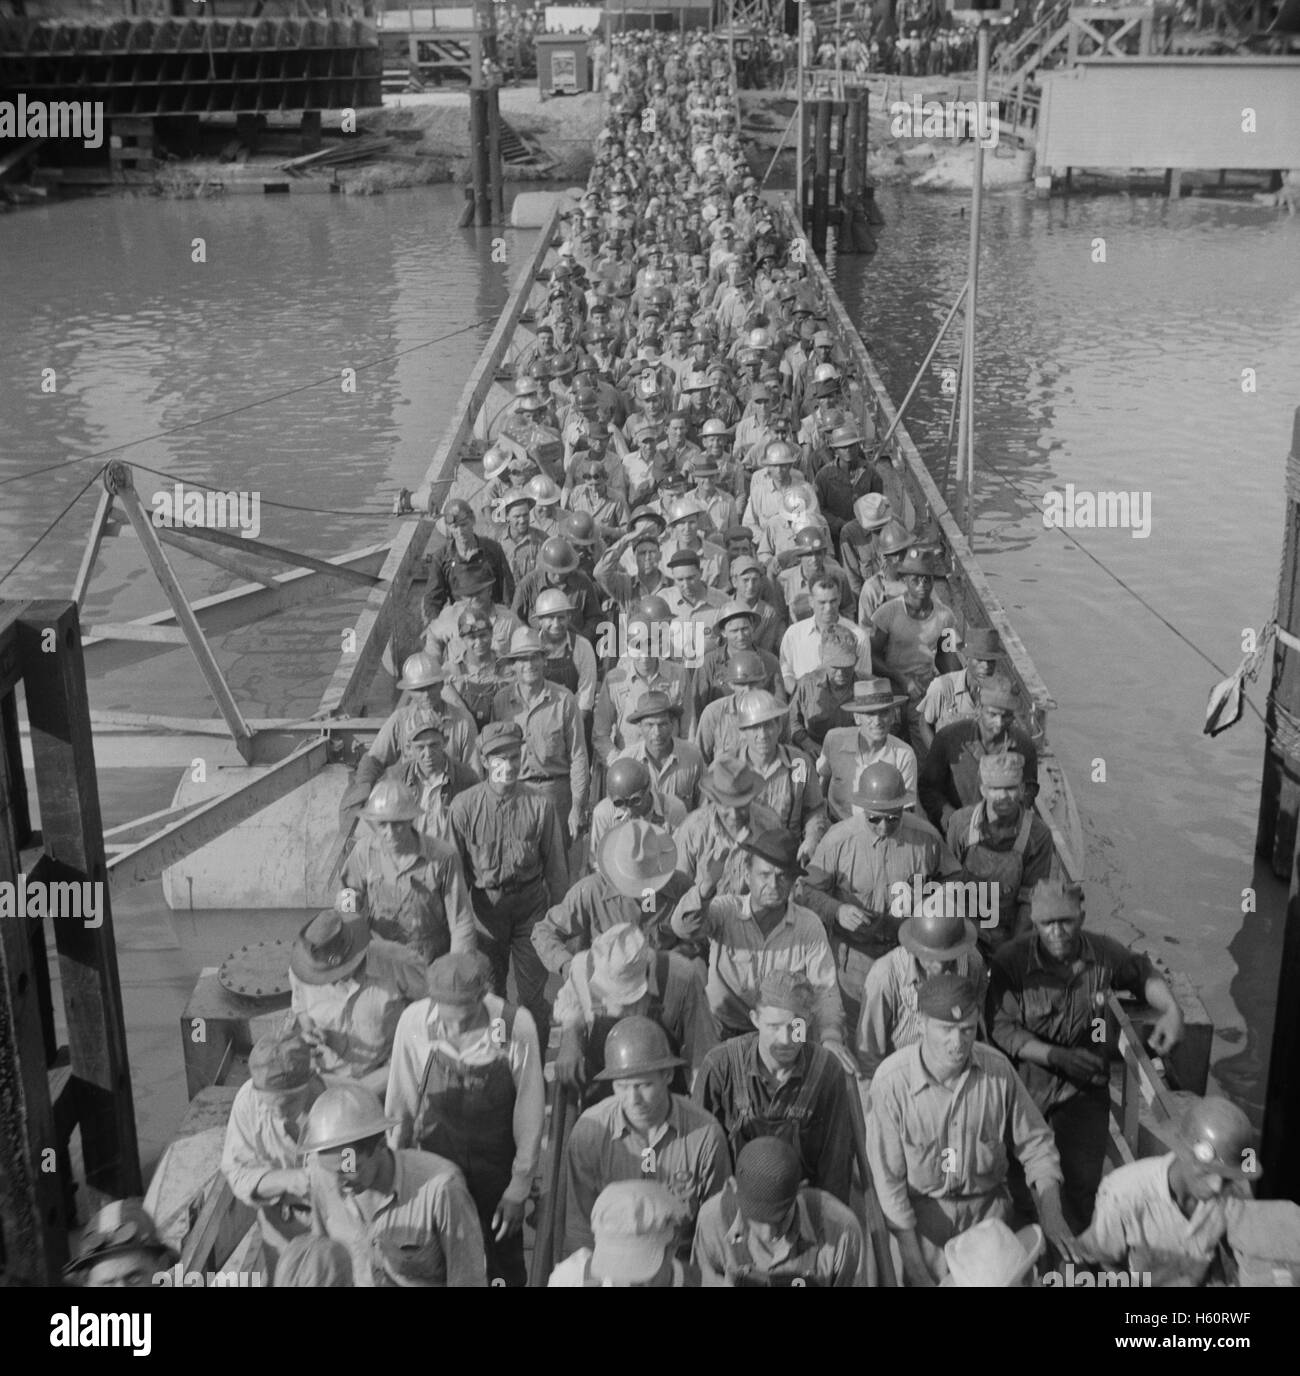 Lasciando i lavoratori dei cantieri navali in Pennsylvania, Beaumont, Texas, USA, John Vachon per ufficio di informazione di guerra, Maggio 1943 Foto Stock